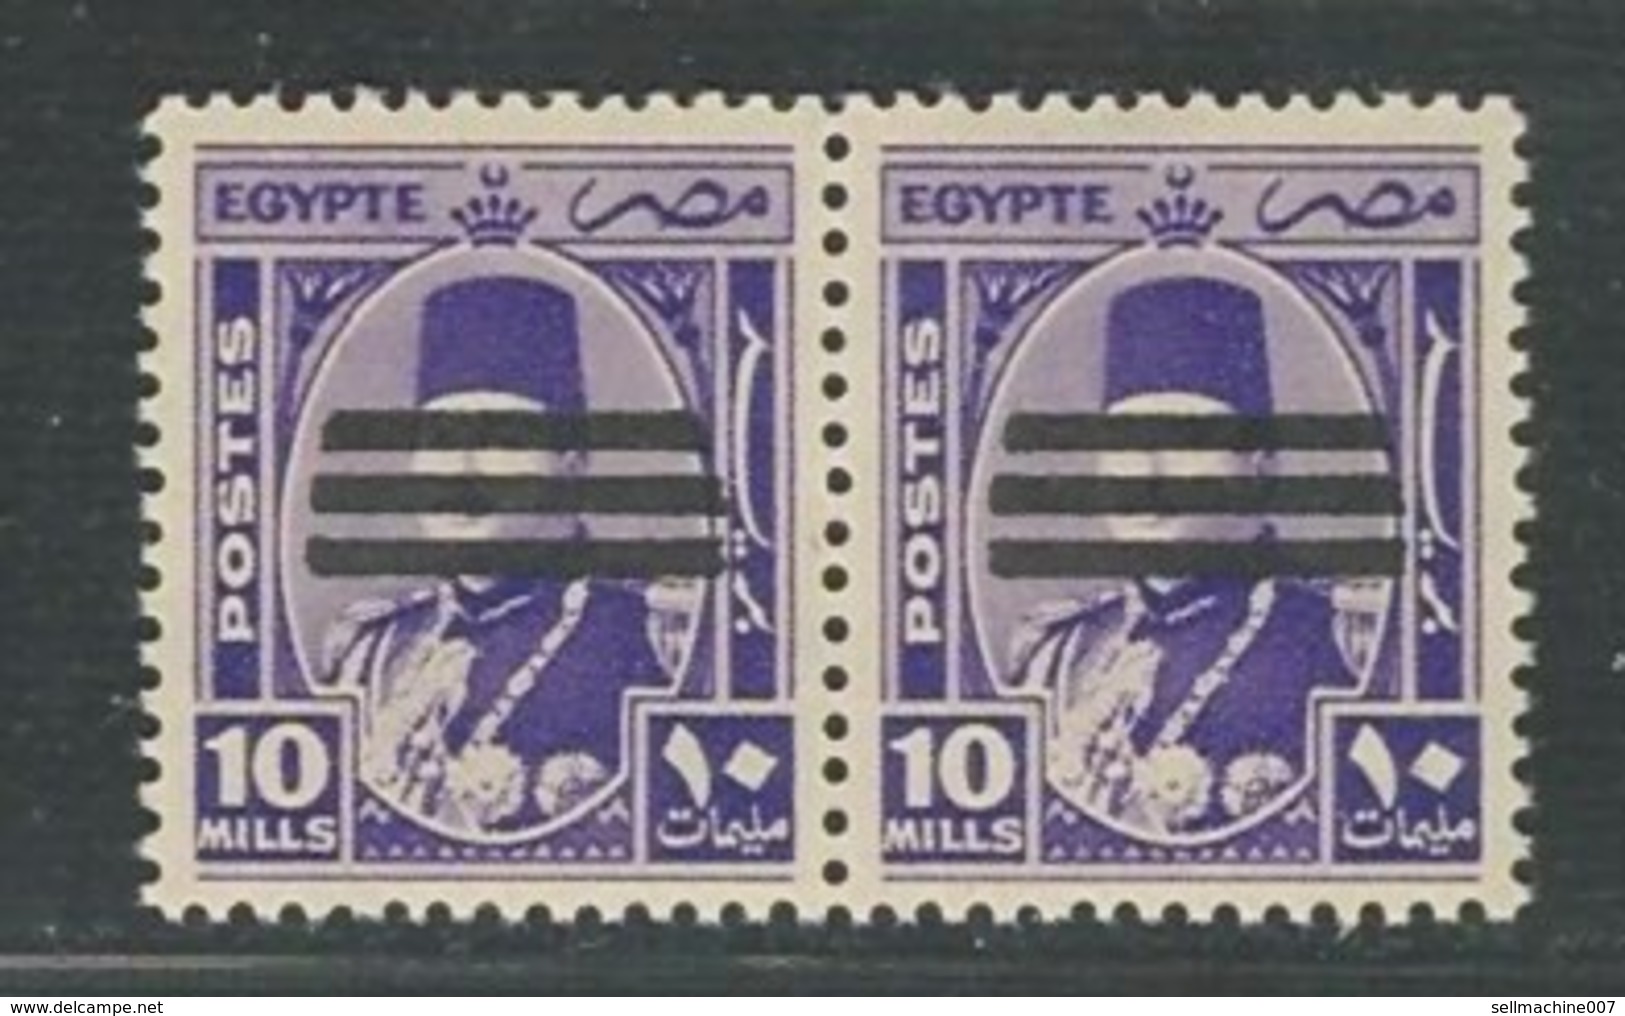 Egypt Kingdom Postage 1953-10 Mills MNH PAIR Stamp - King Farouk MARSHALL Ovpt 3 Bars/bar Obliterate Portrait- MARSAHL - Unused Stamps